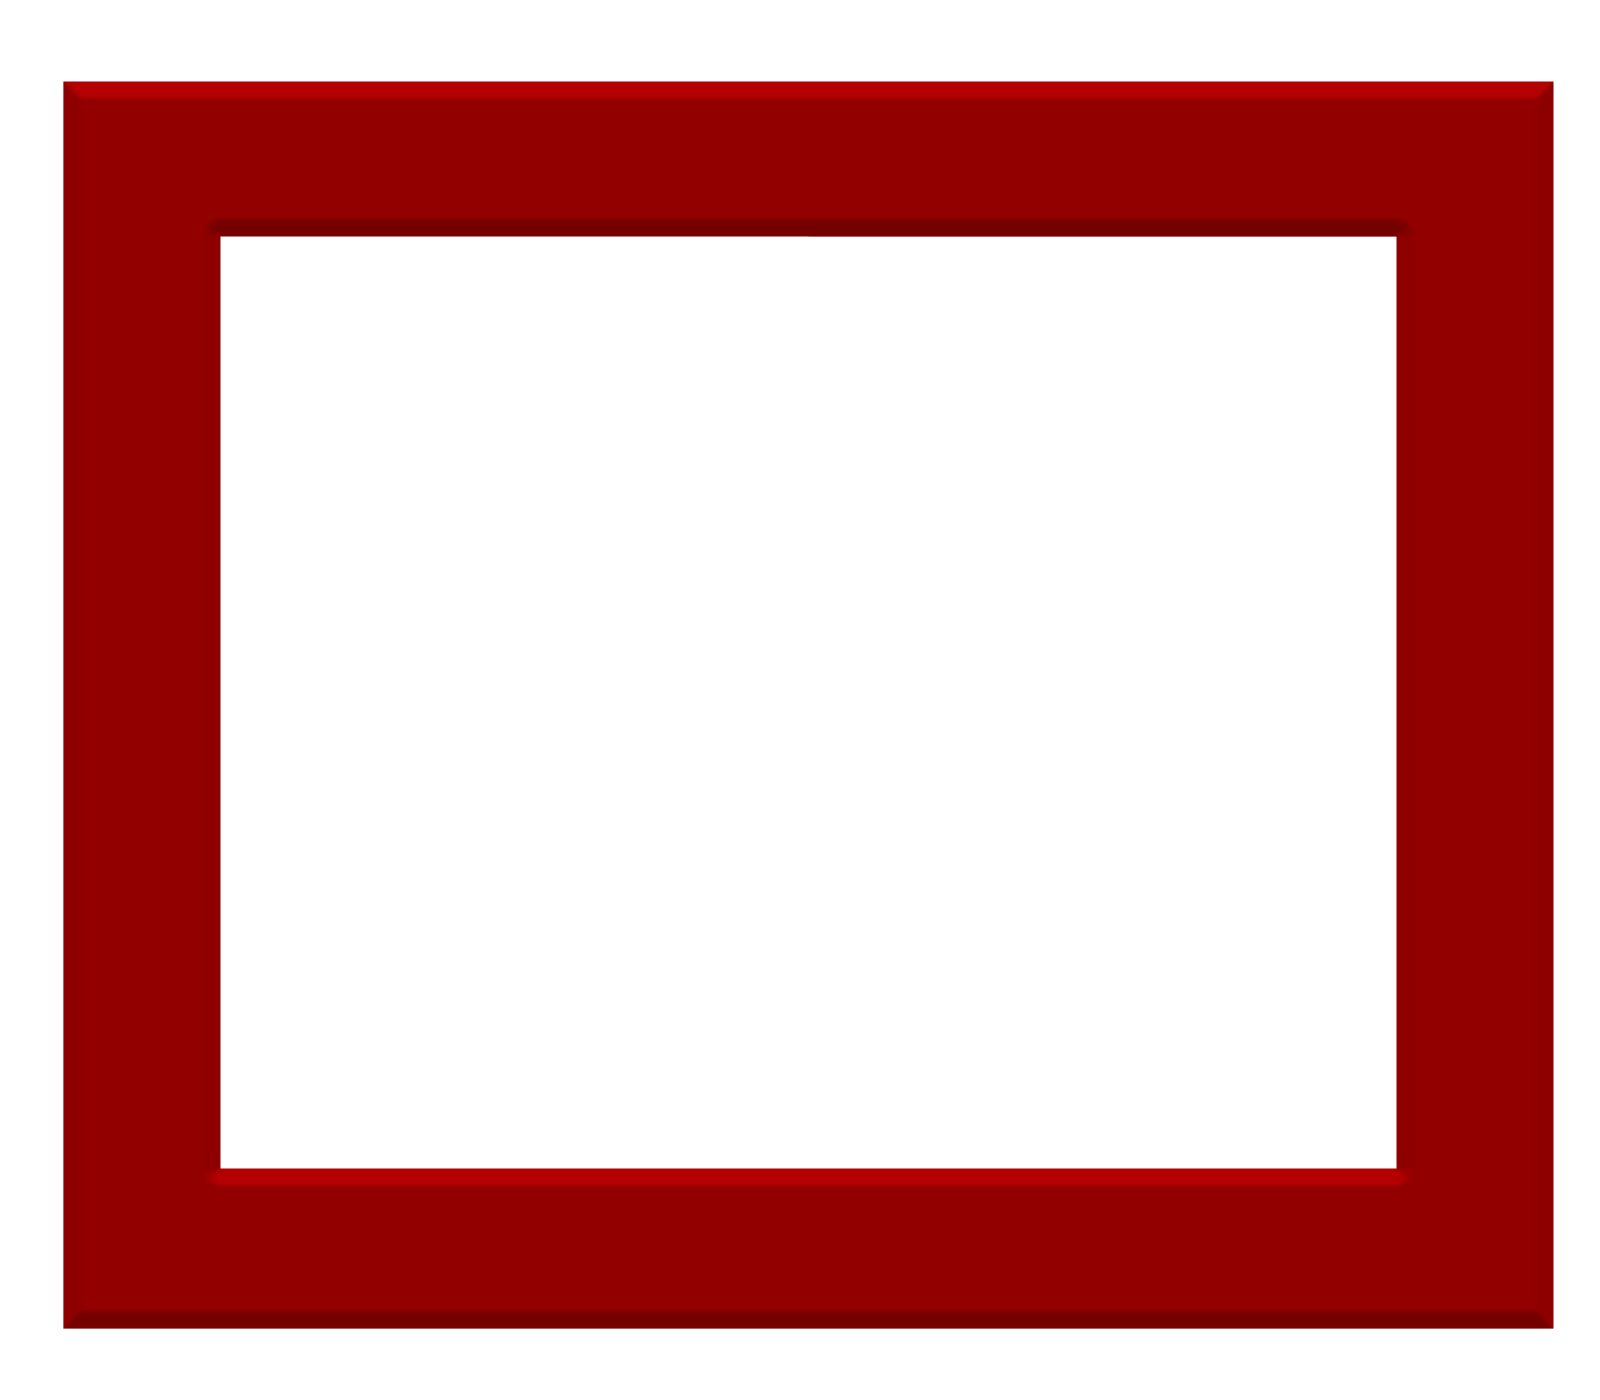 مربع ساده قرمز توخالی با کیفیت بالا